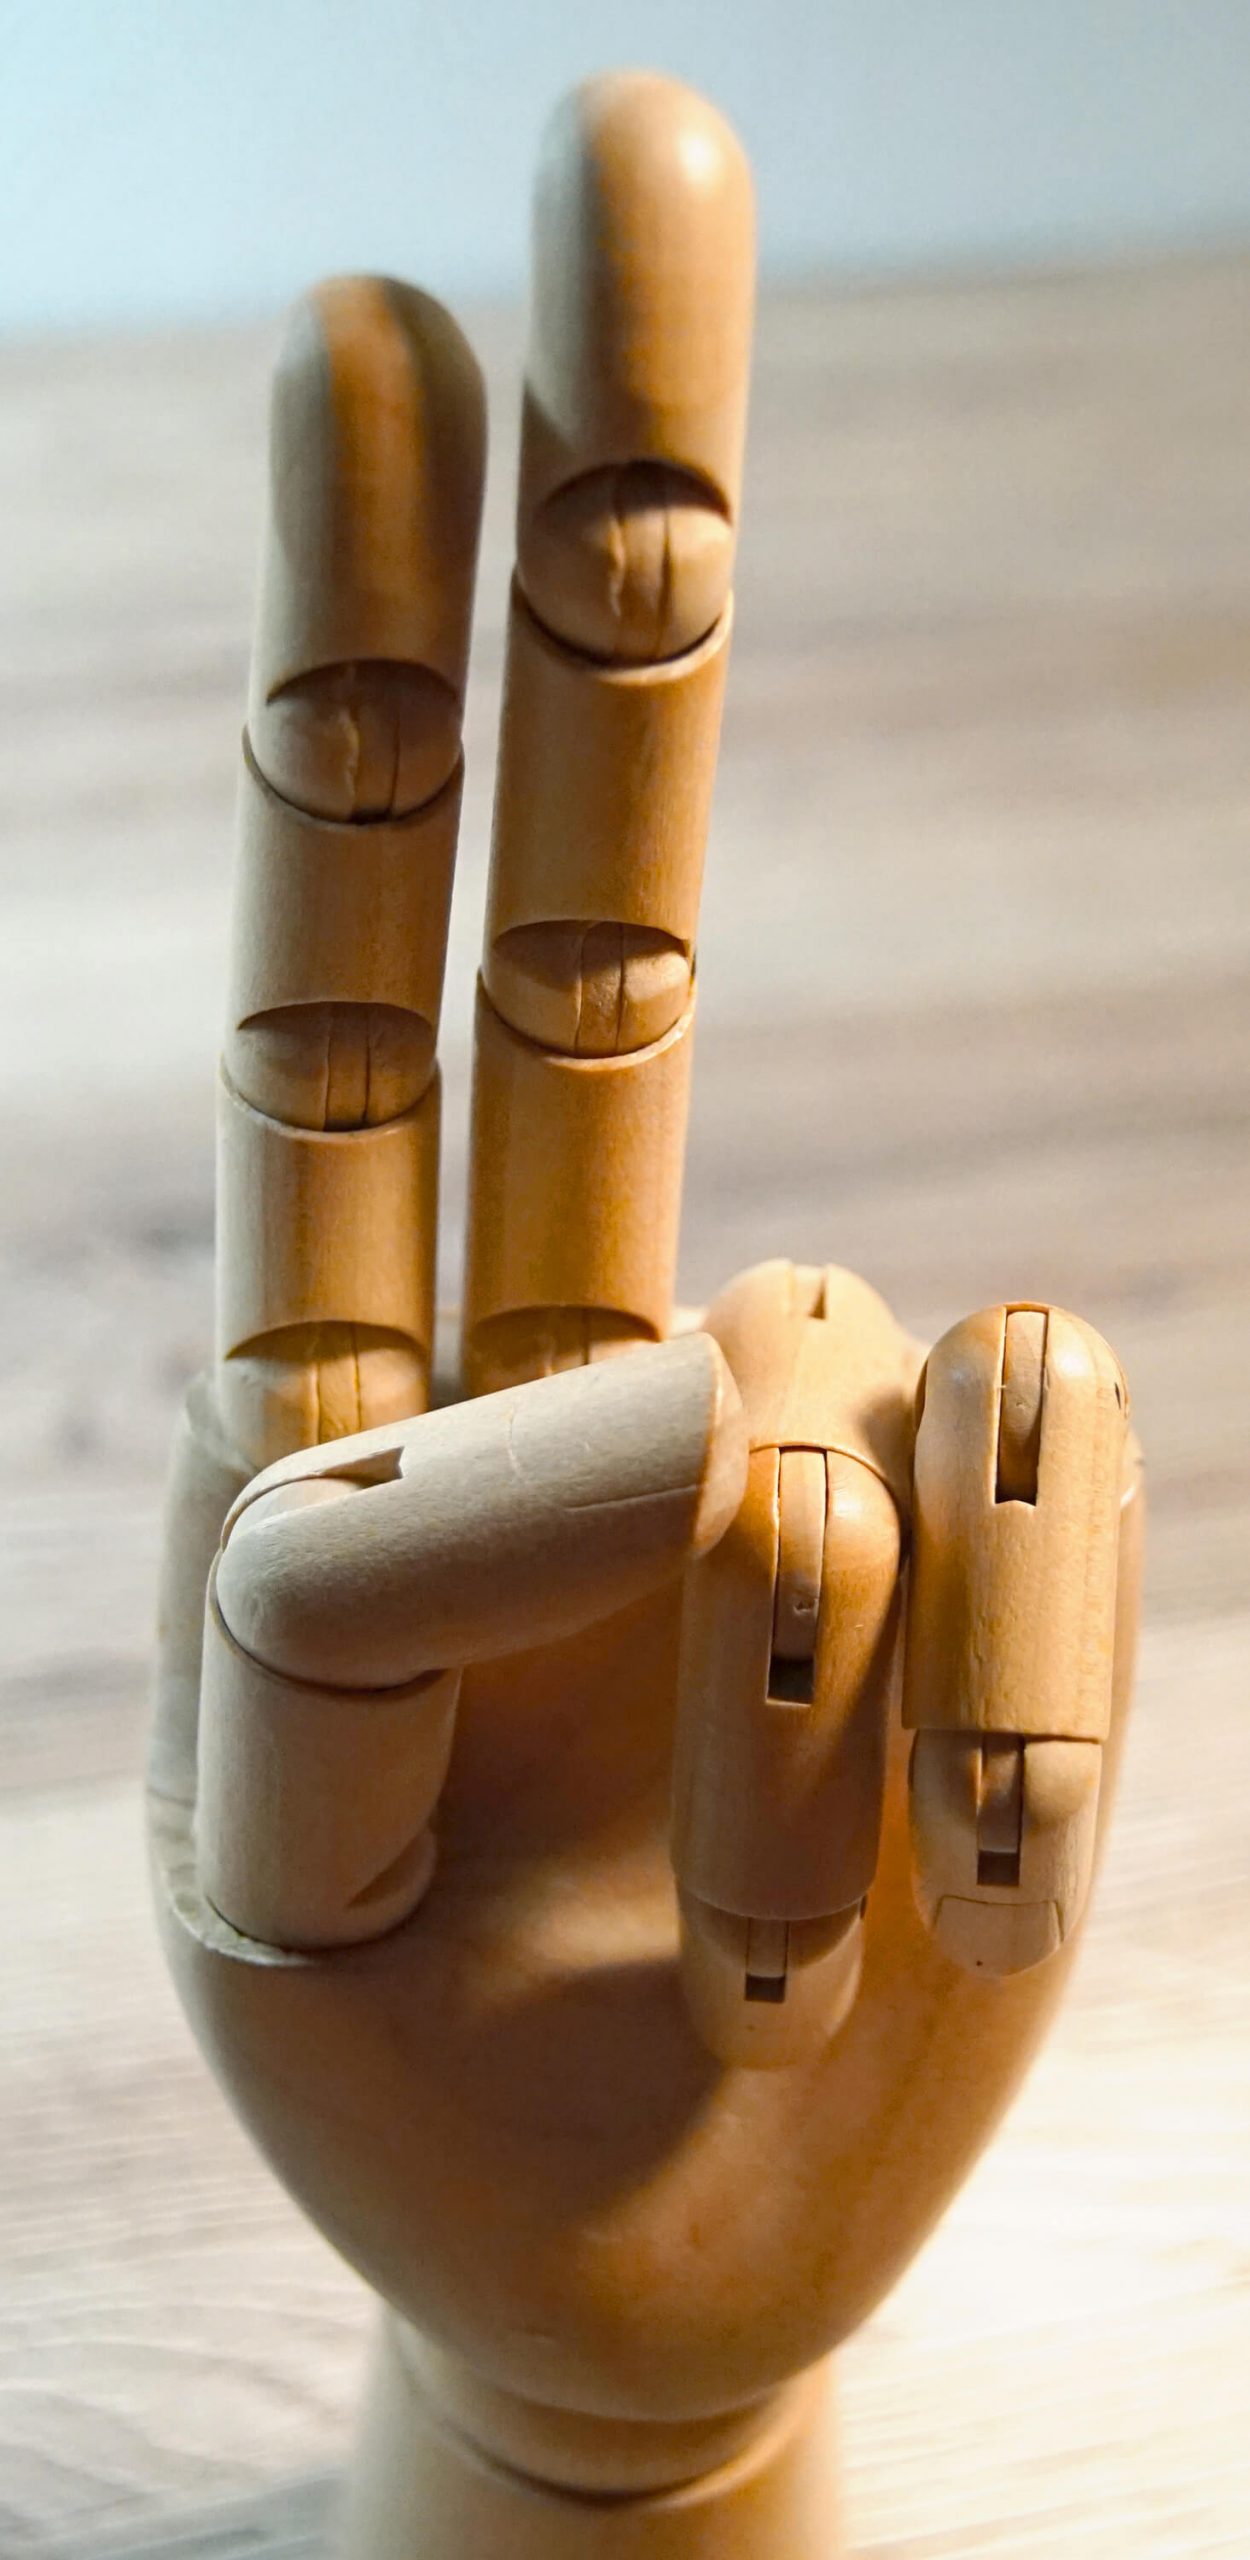 Werbung in Sozialen Medien - Holzhand hält zwei Finger hoch